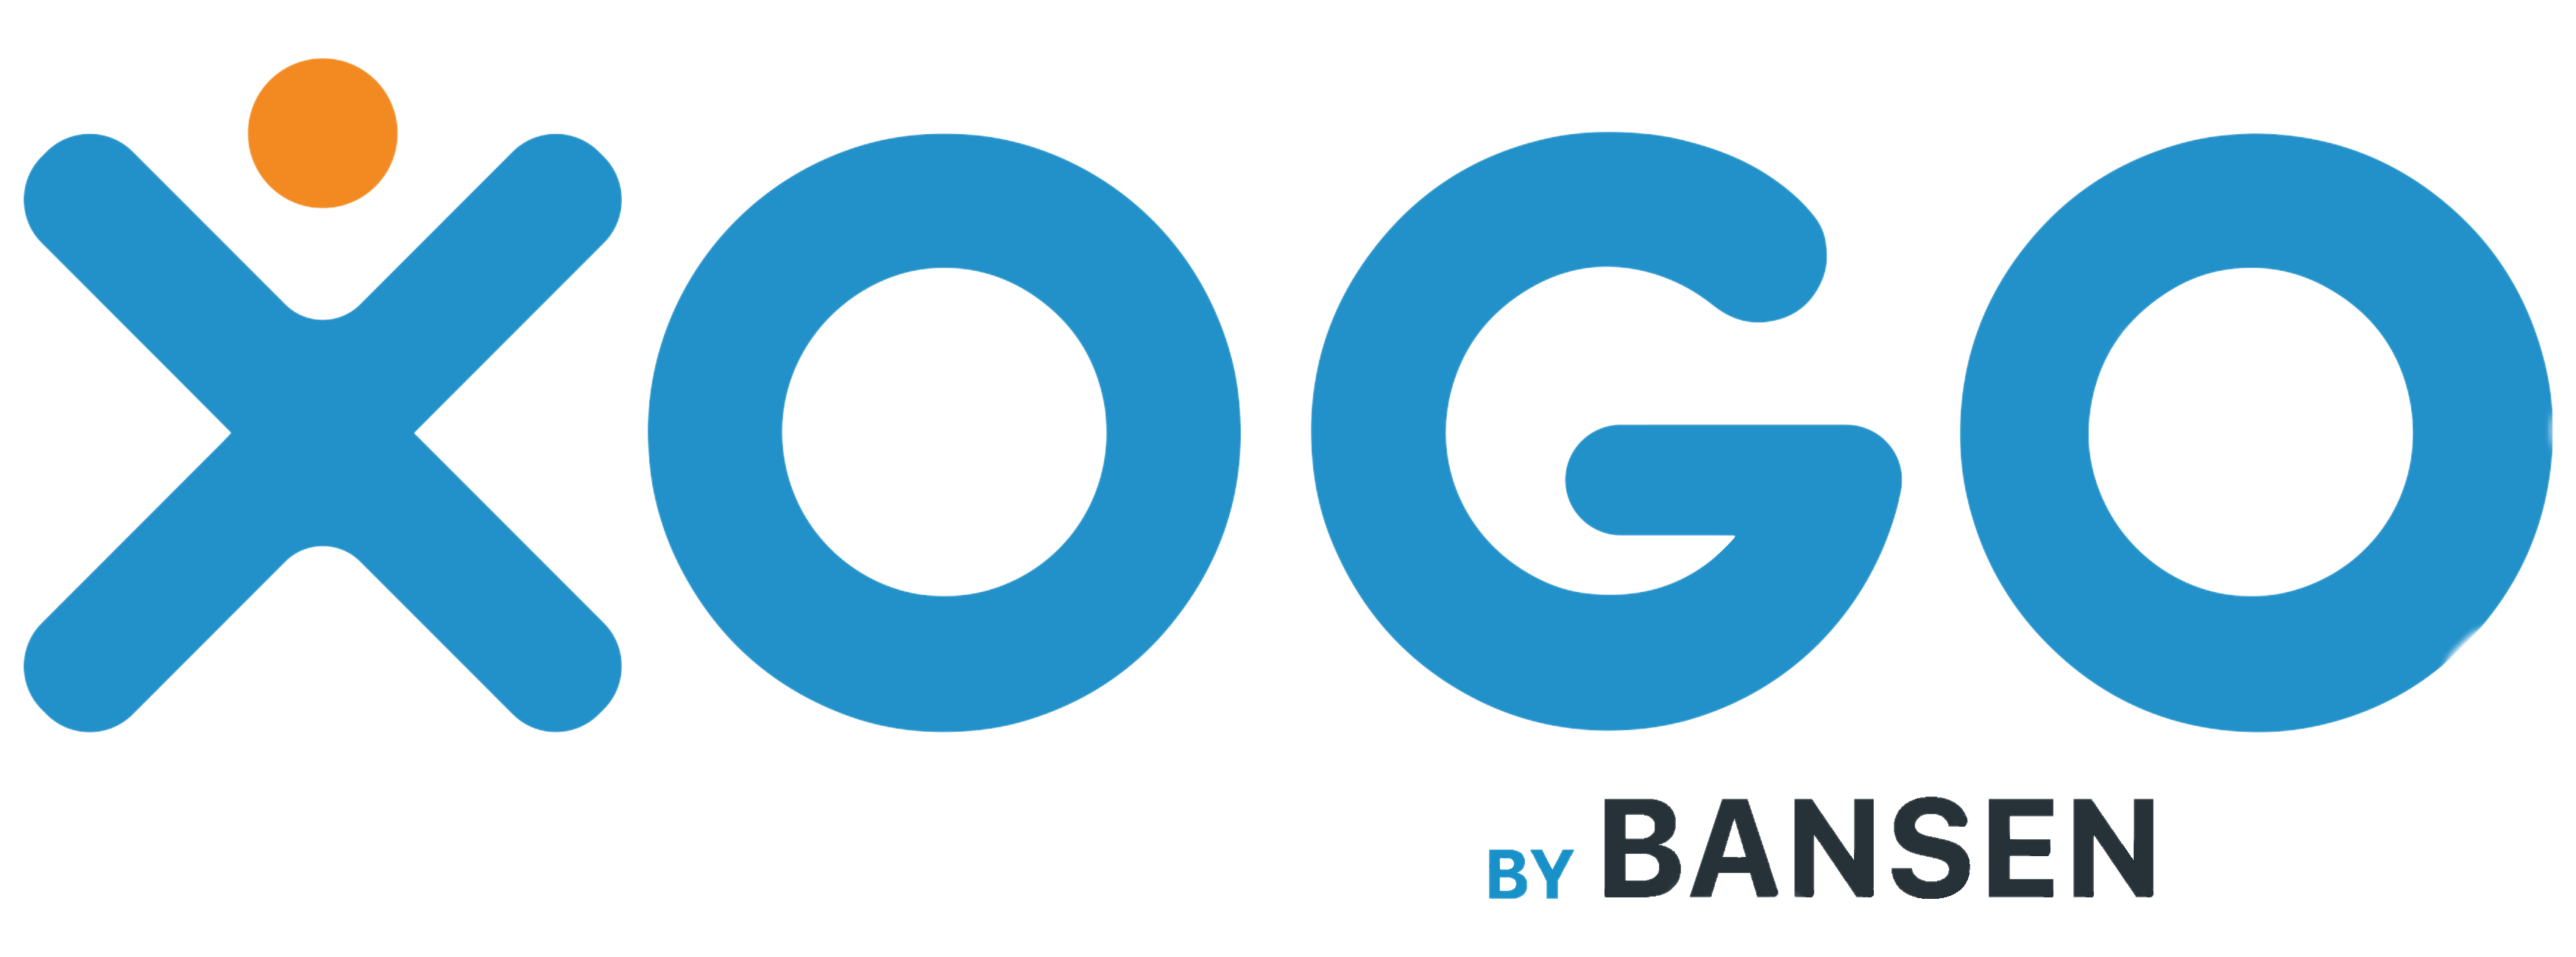 Xogo by Bansen Labs